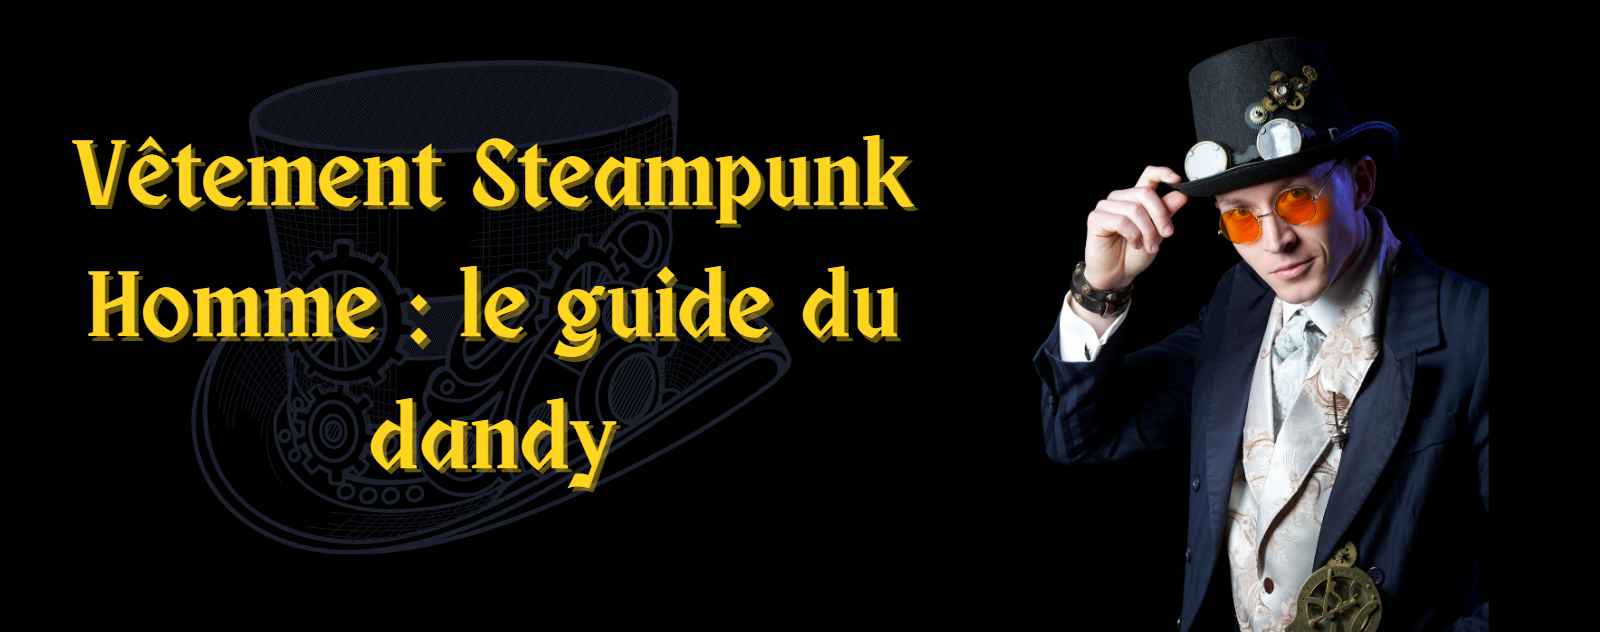 Steampunk Homme  le guide du dandy